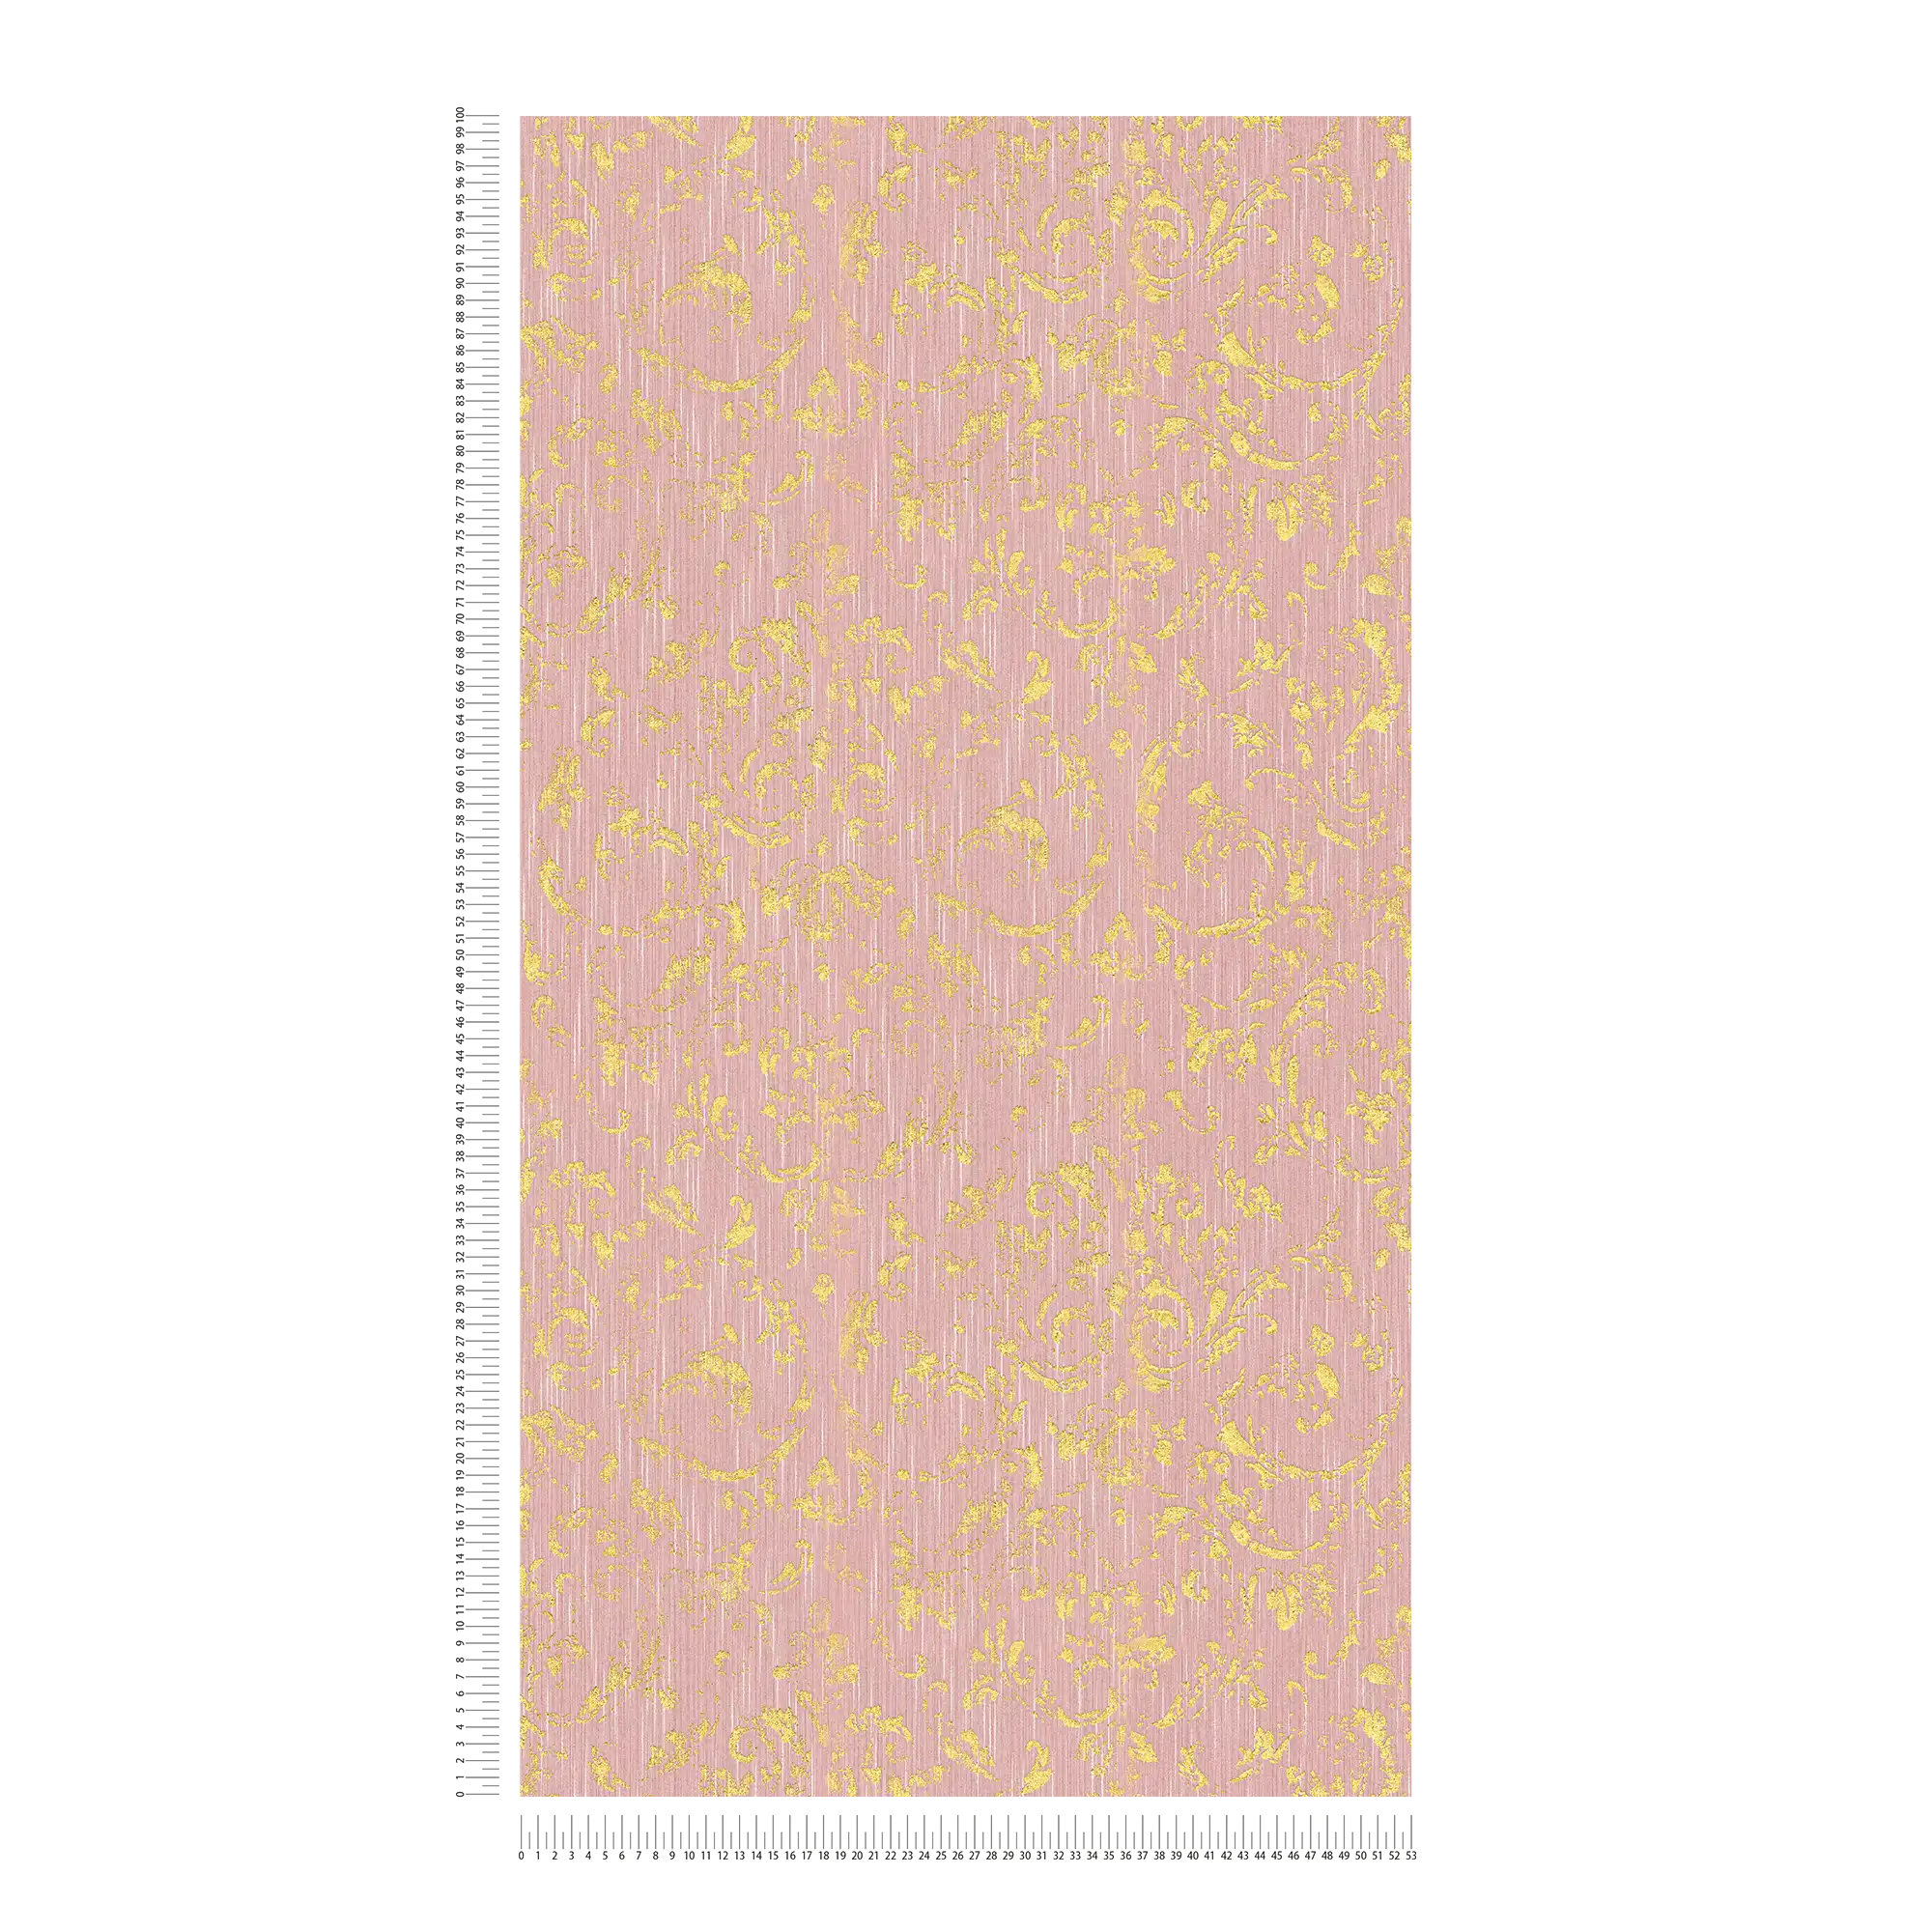             Papier peint avec ornements dorés, aspect usé - rose, or
        